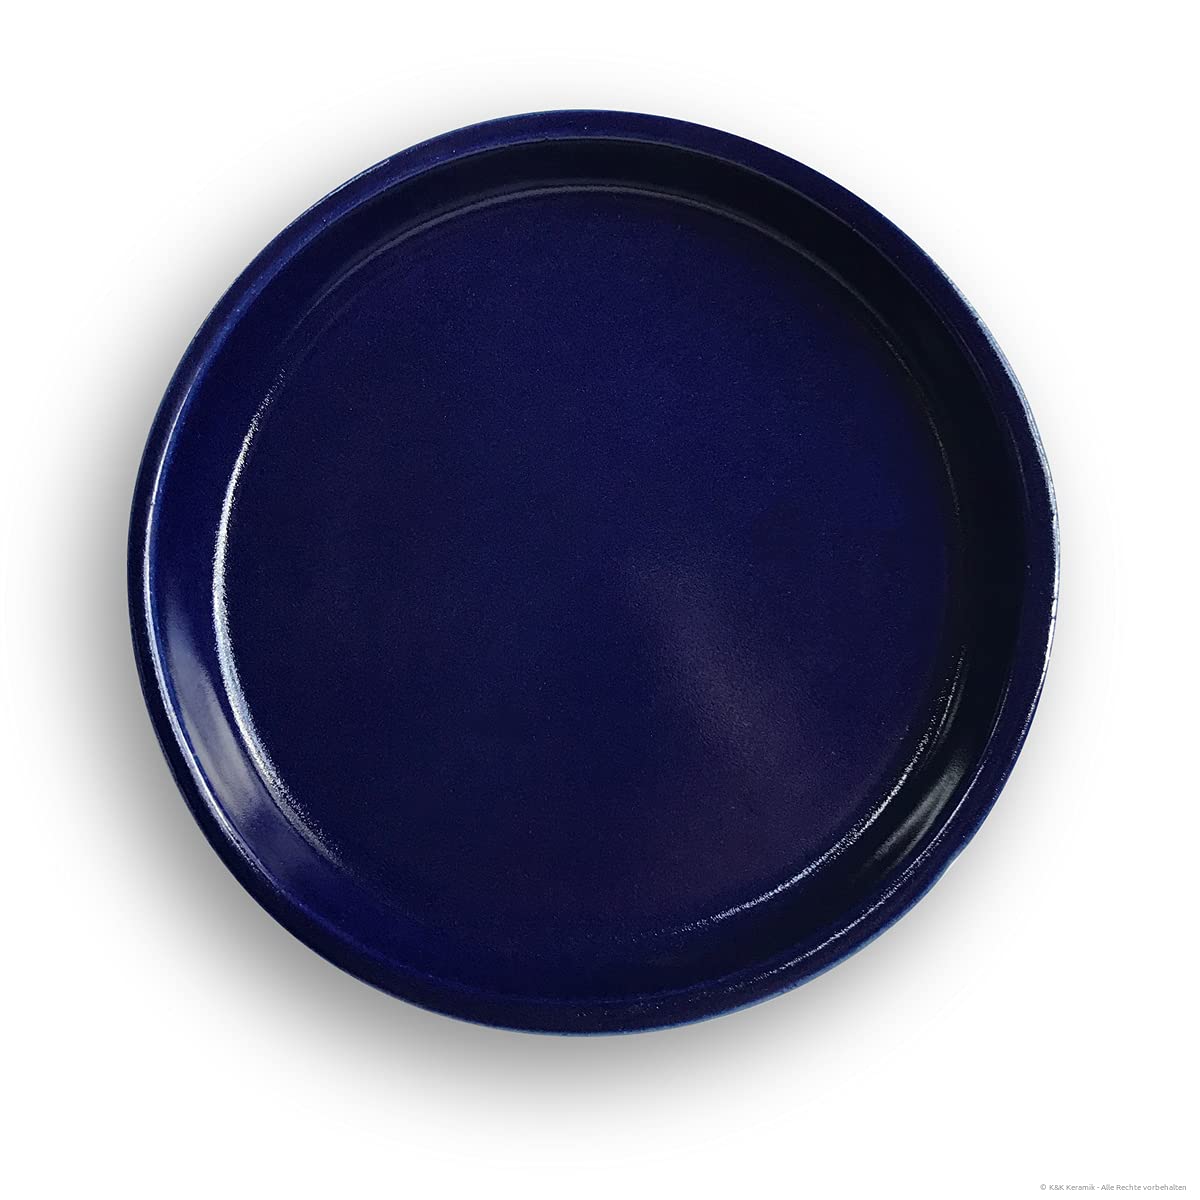 K&K Keramik Unterschale/Untersetzer rund witterungsbeständig Außen Ø26 cm, Innen Ø22 cm robust, dickwandig für Blumentopf Pflanzkübel Vogeltränke Farbe: blau